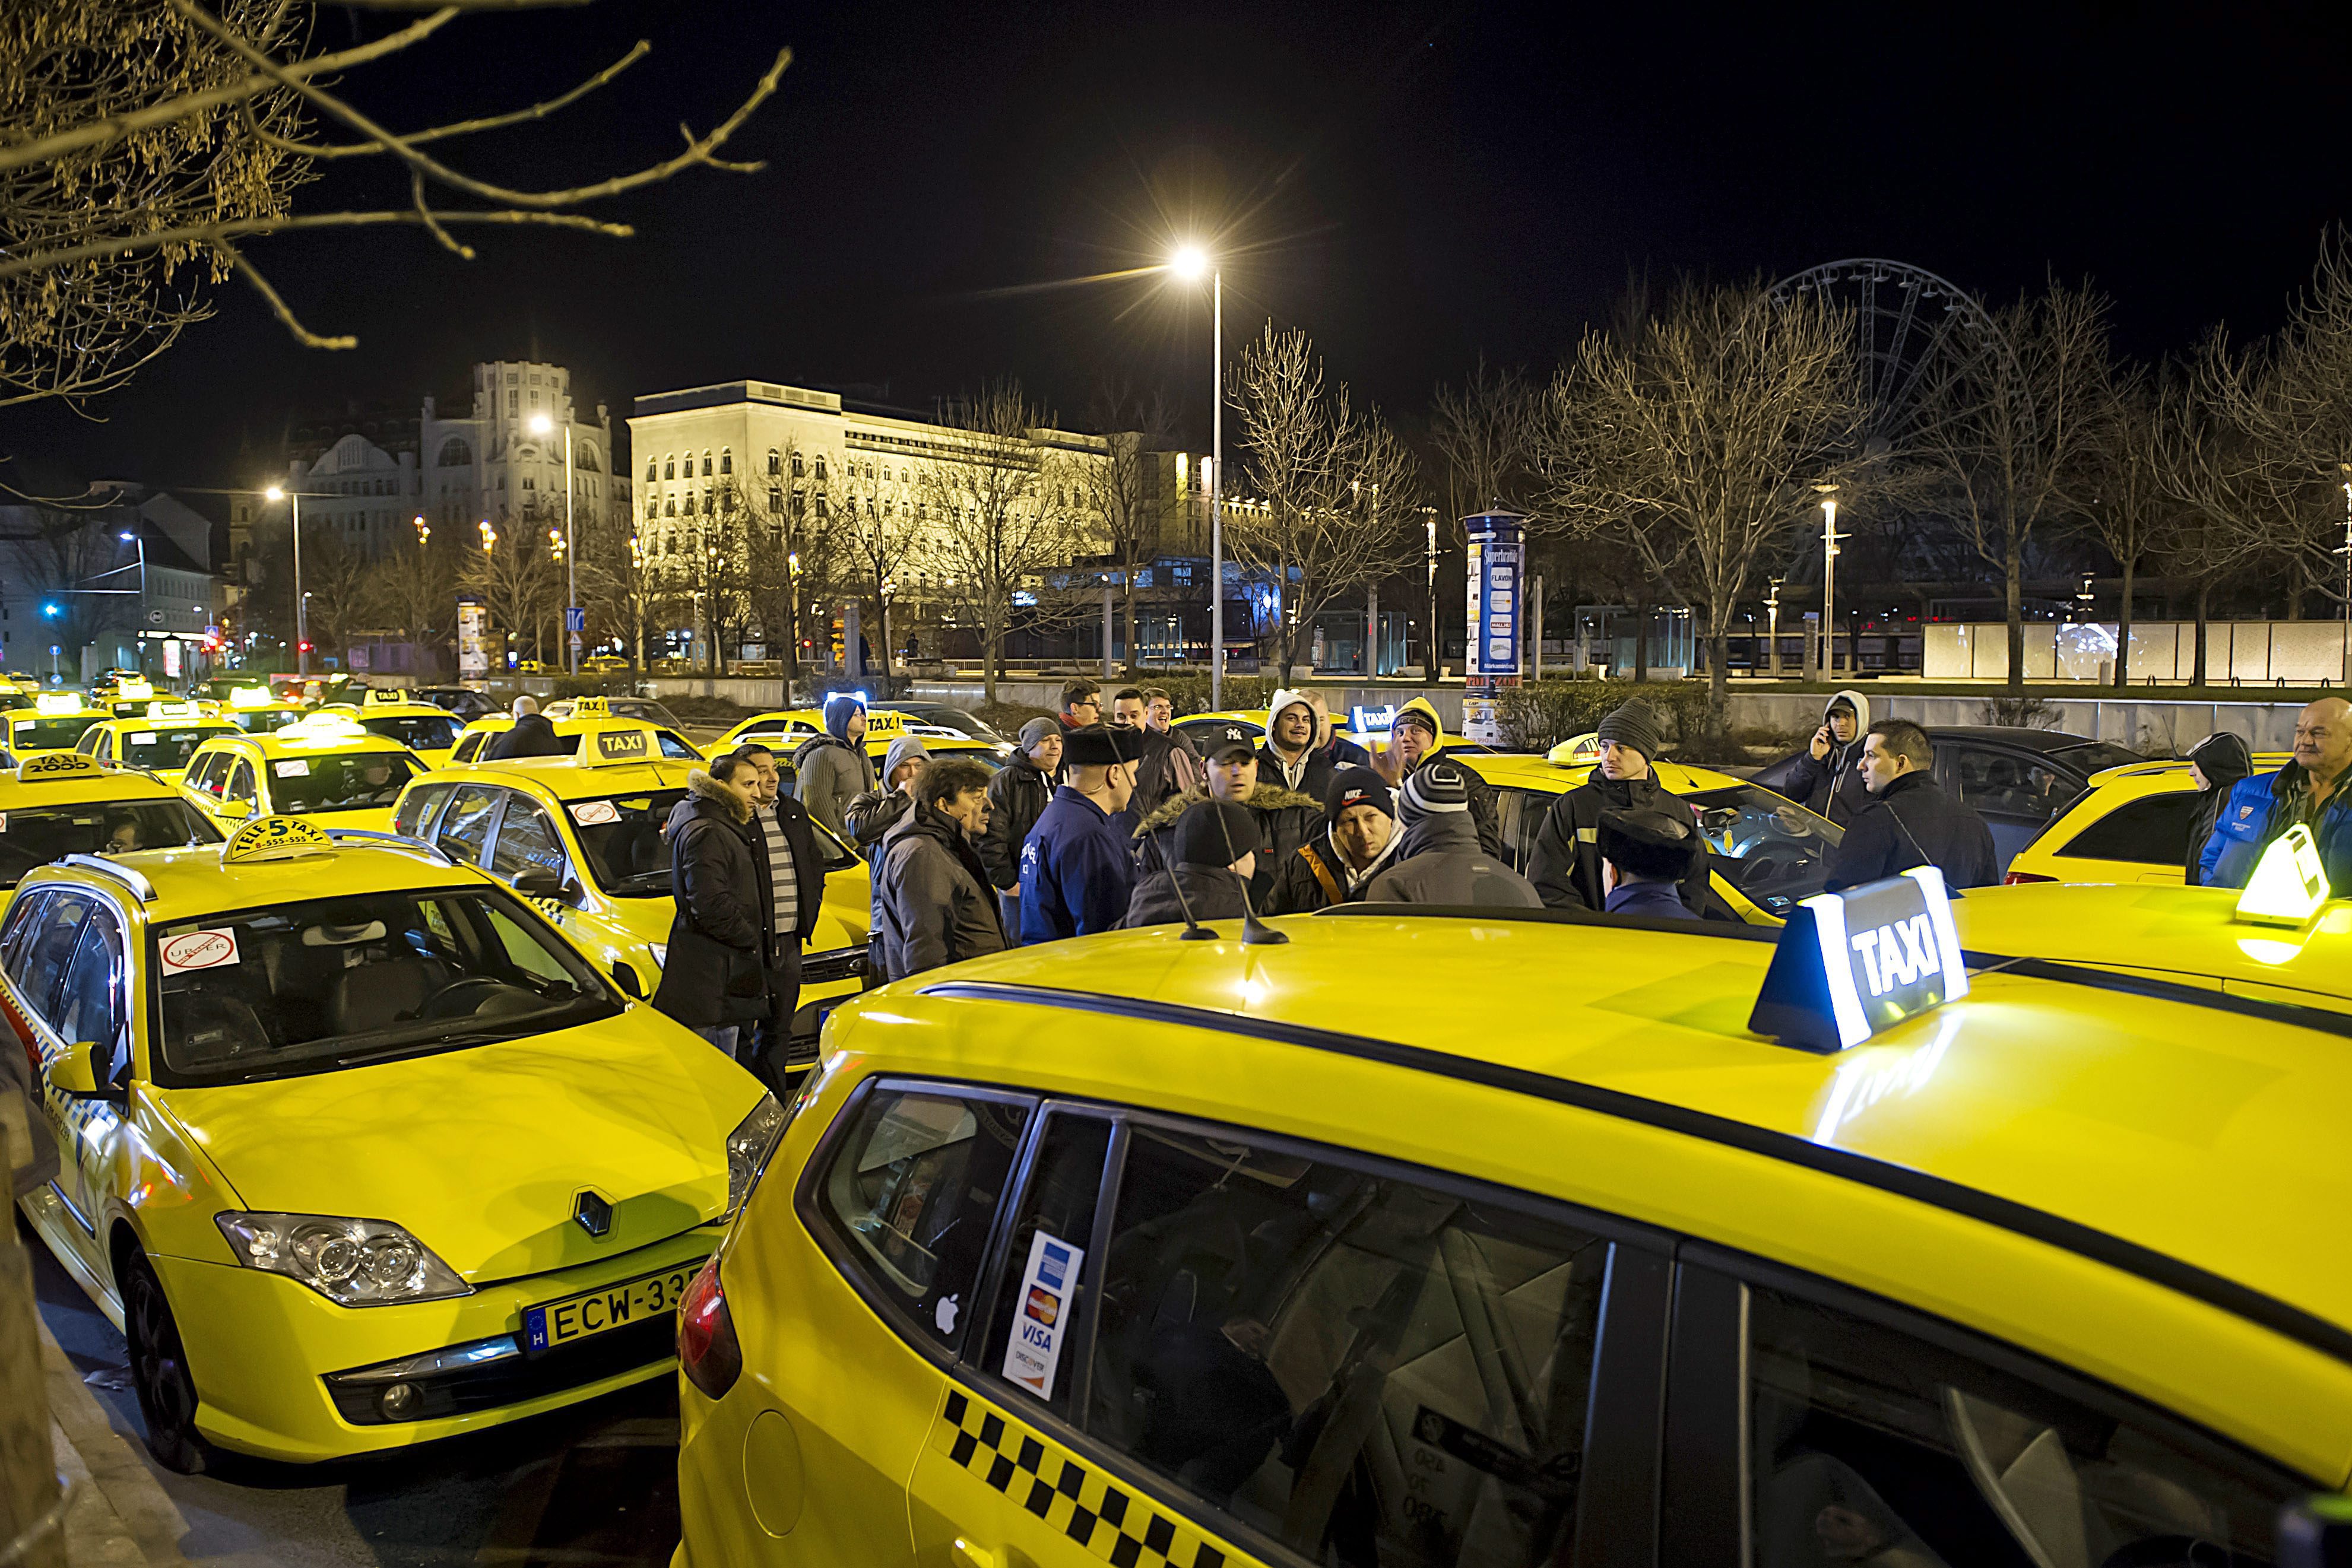 Itt vannak az Uber miatt tüntető taxisok követelései, és ez az egyik legerősebb szöveg, amit idén olvastál